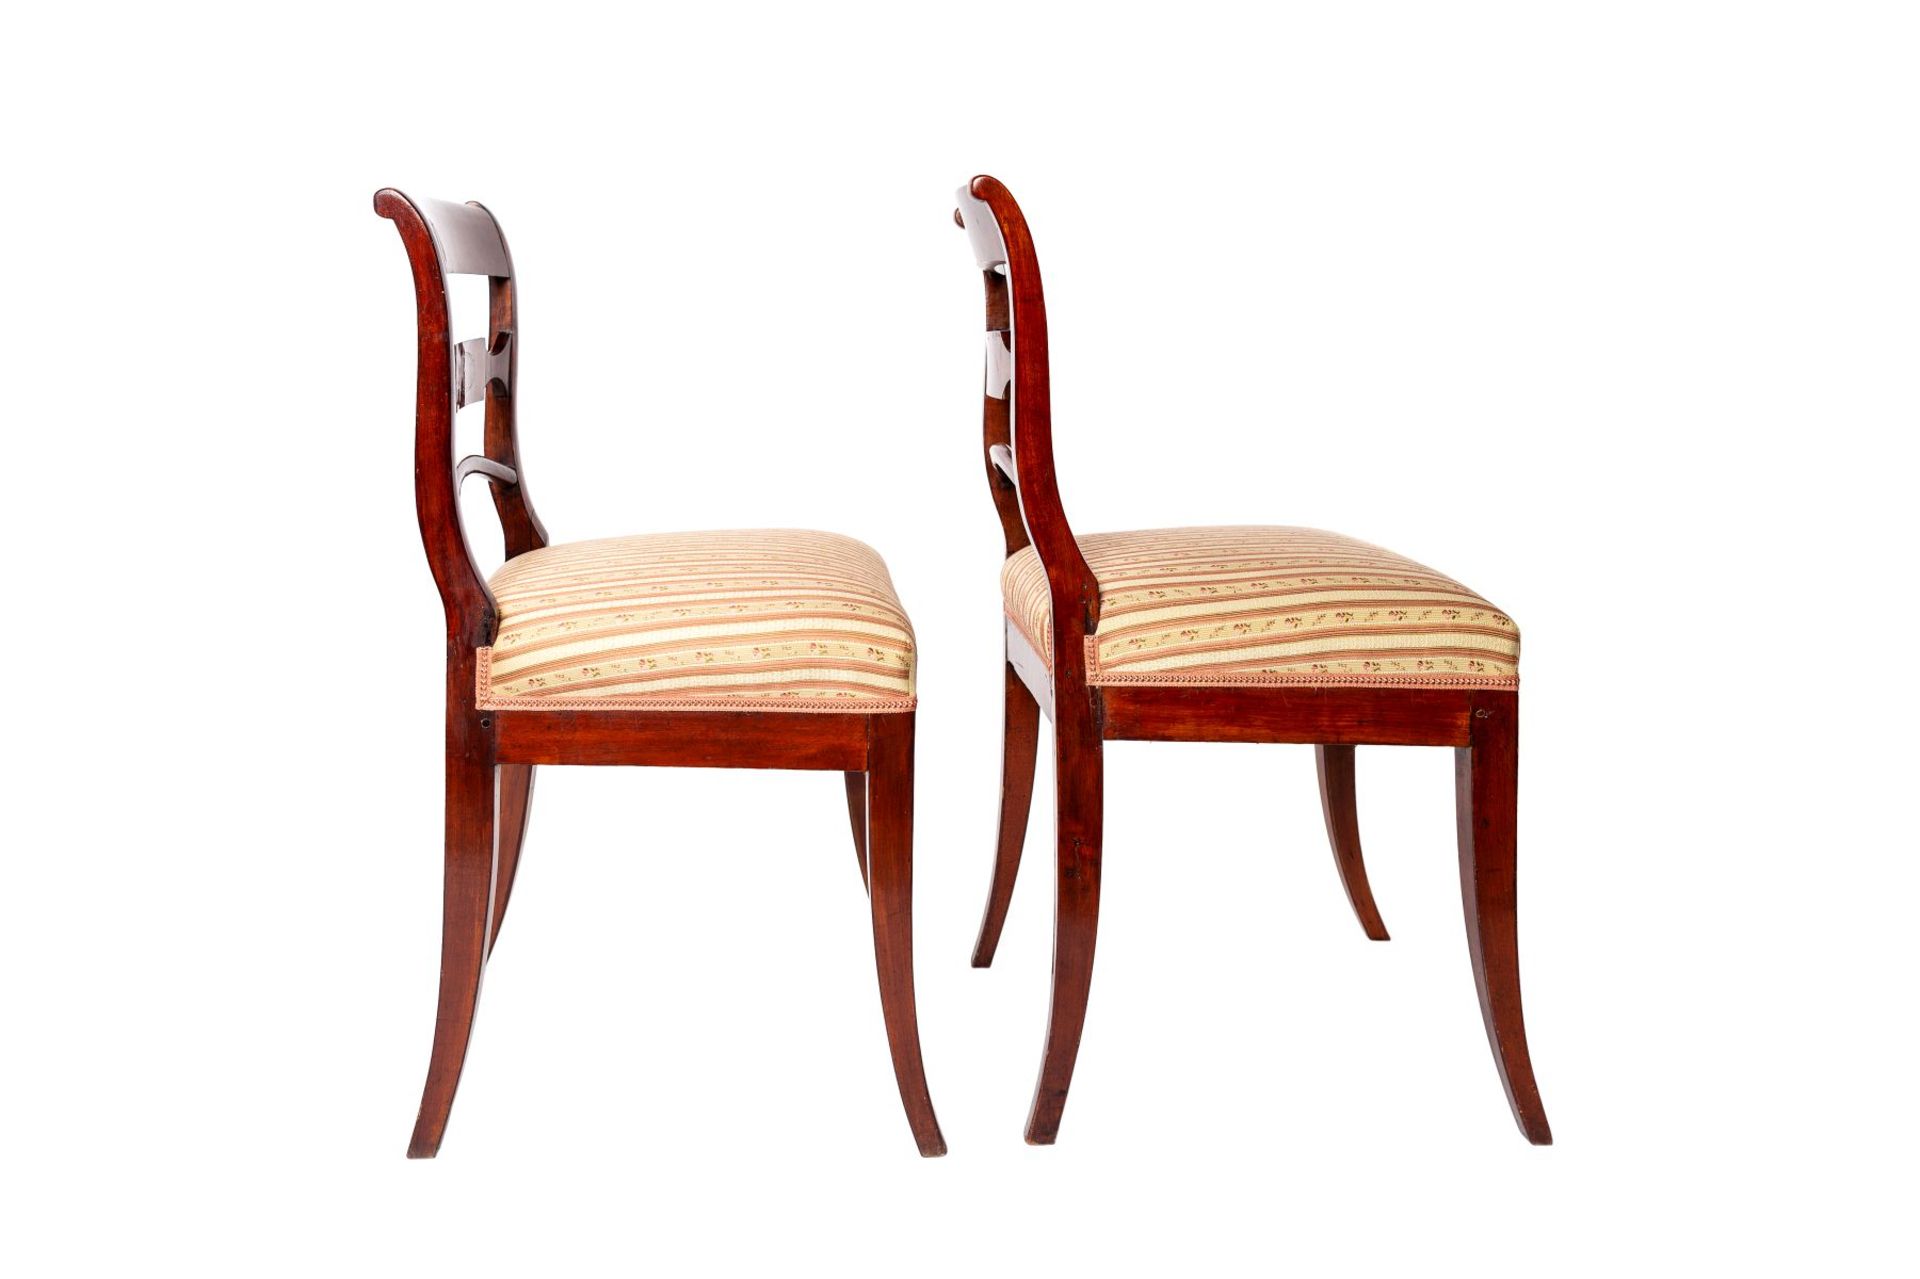 Biedermeier Chairs | Biedermeierstuehle - Image 2 of 4